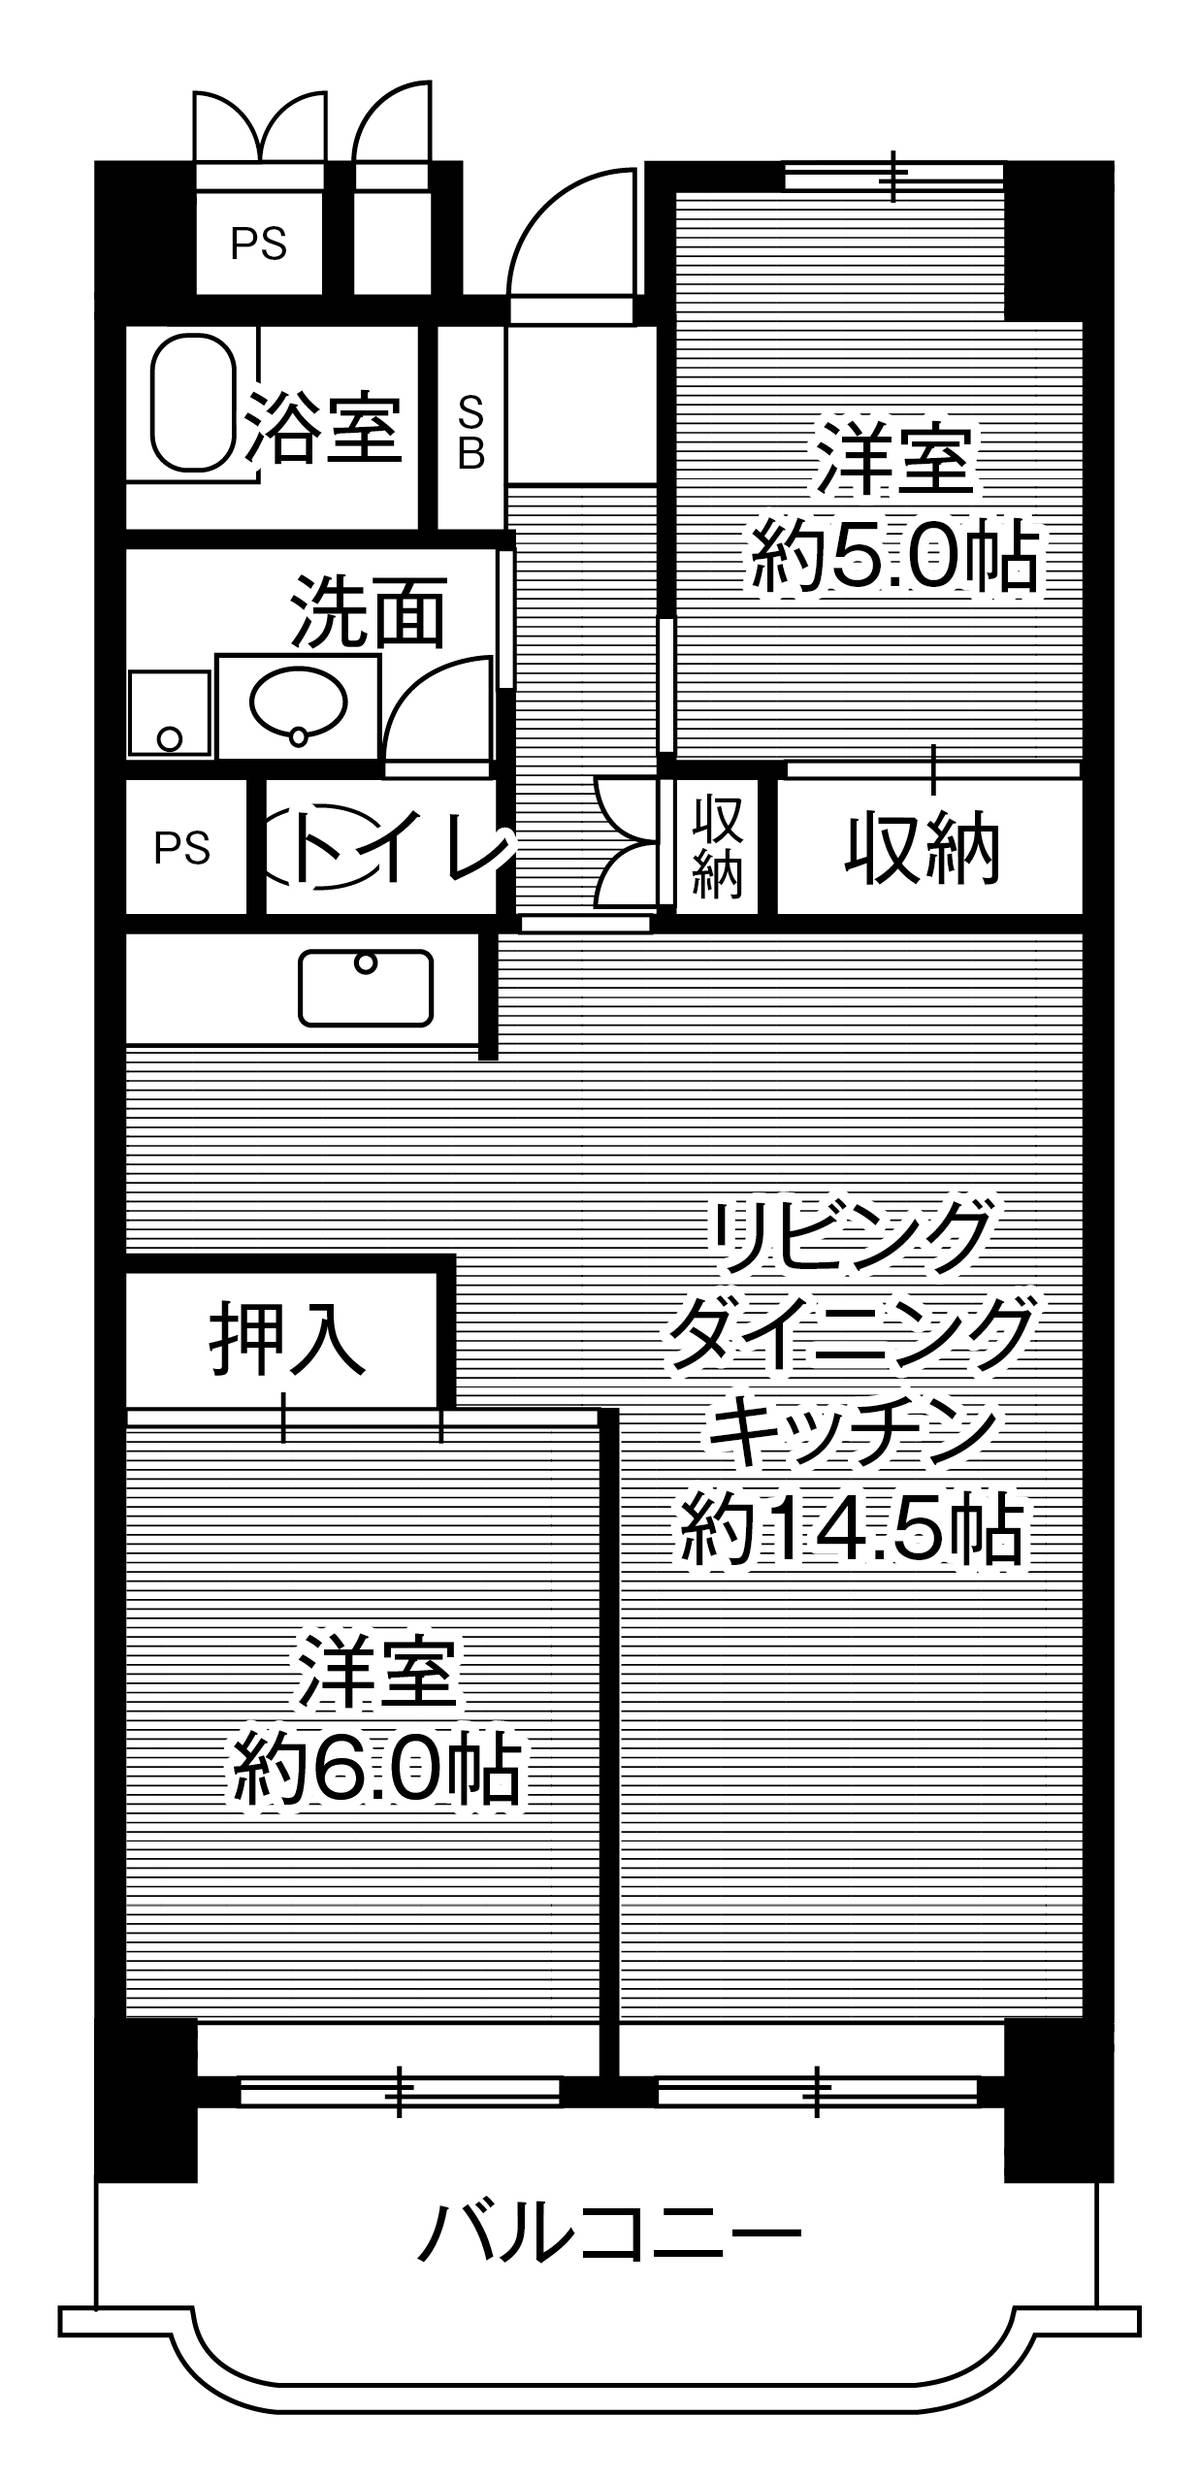 Sơ đồ phòng 3DK của Village House Gifu Tower ở Gifu-shi